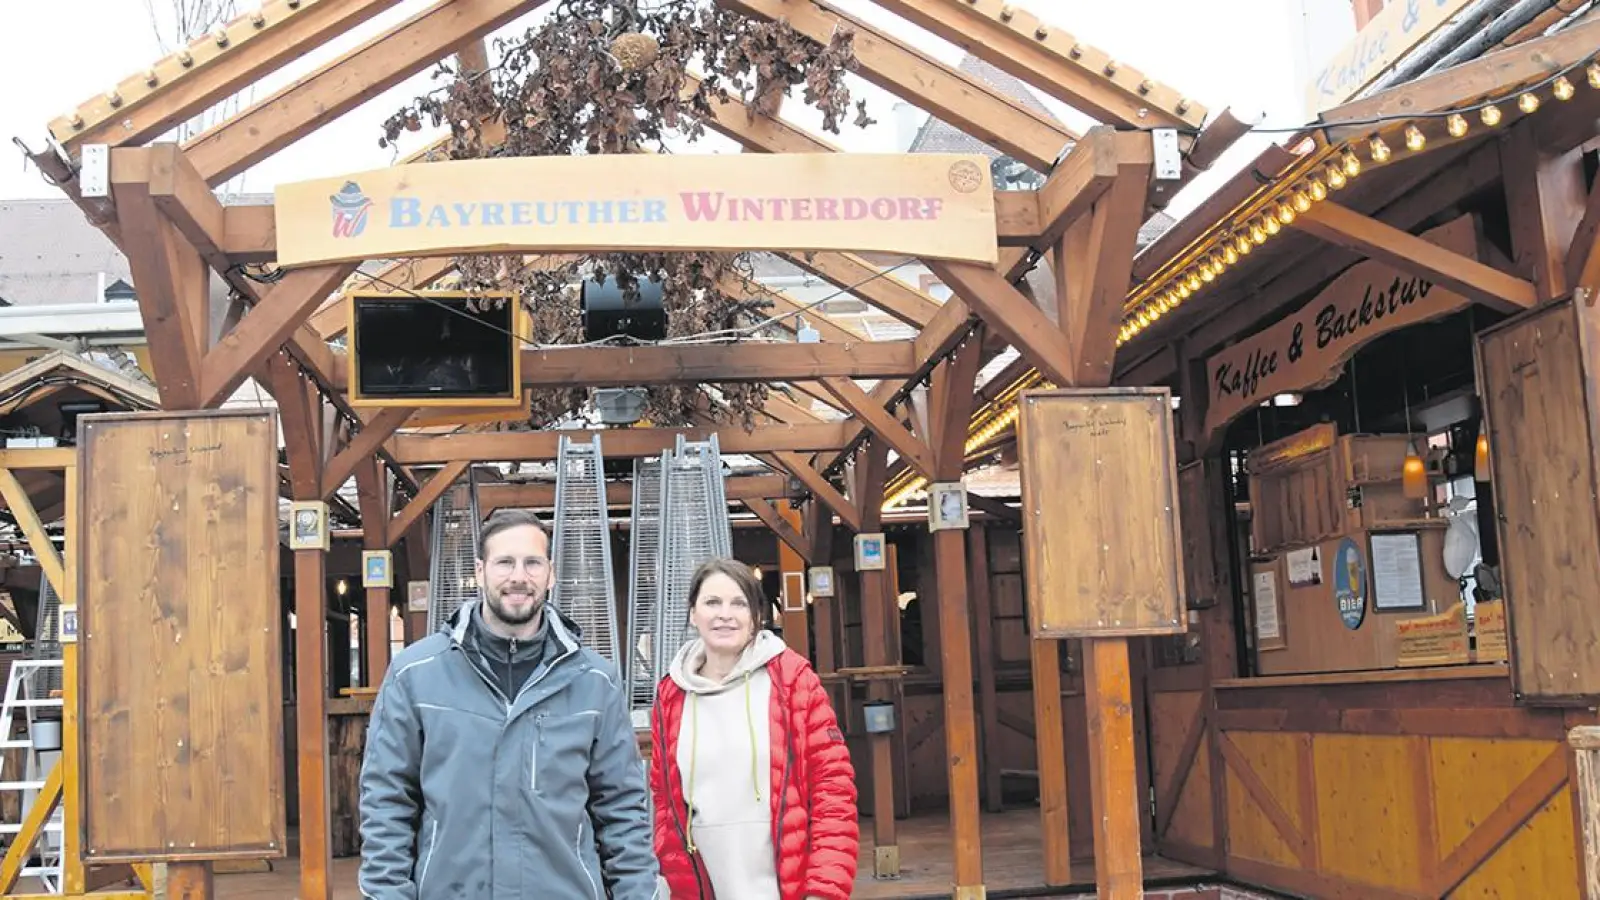 Lokalnachrichten in Bayreuth: Das Hüttenfeeling geht wieder los (Foto: Jessica Mohr)